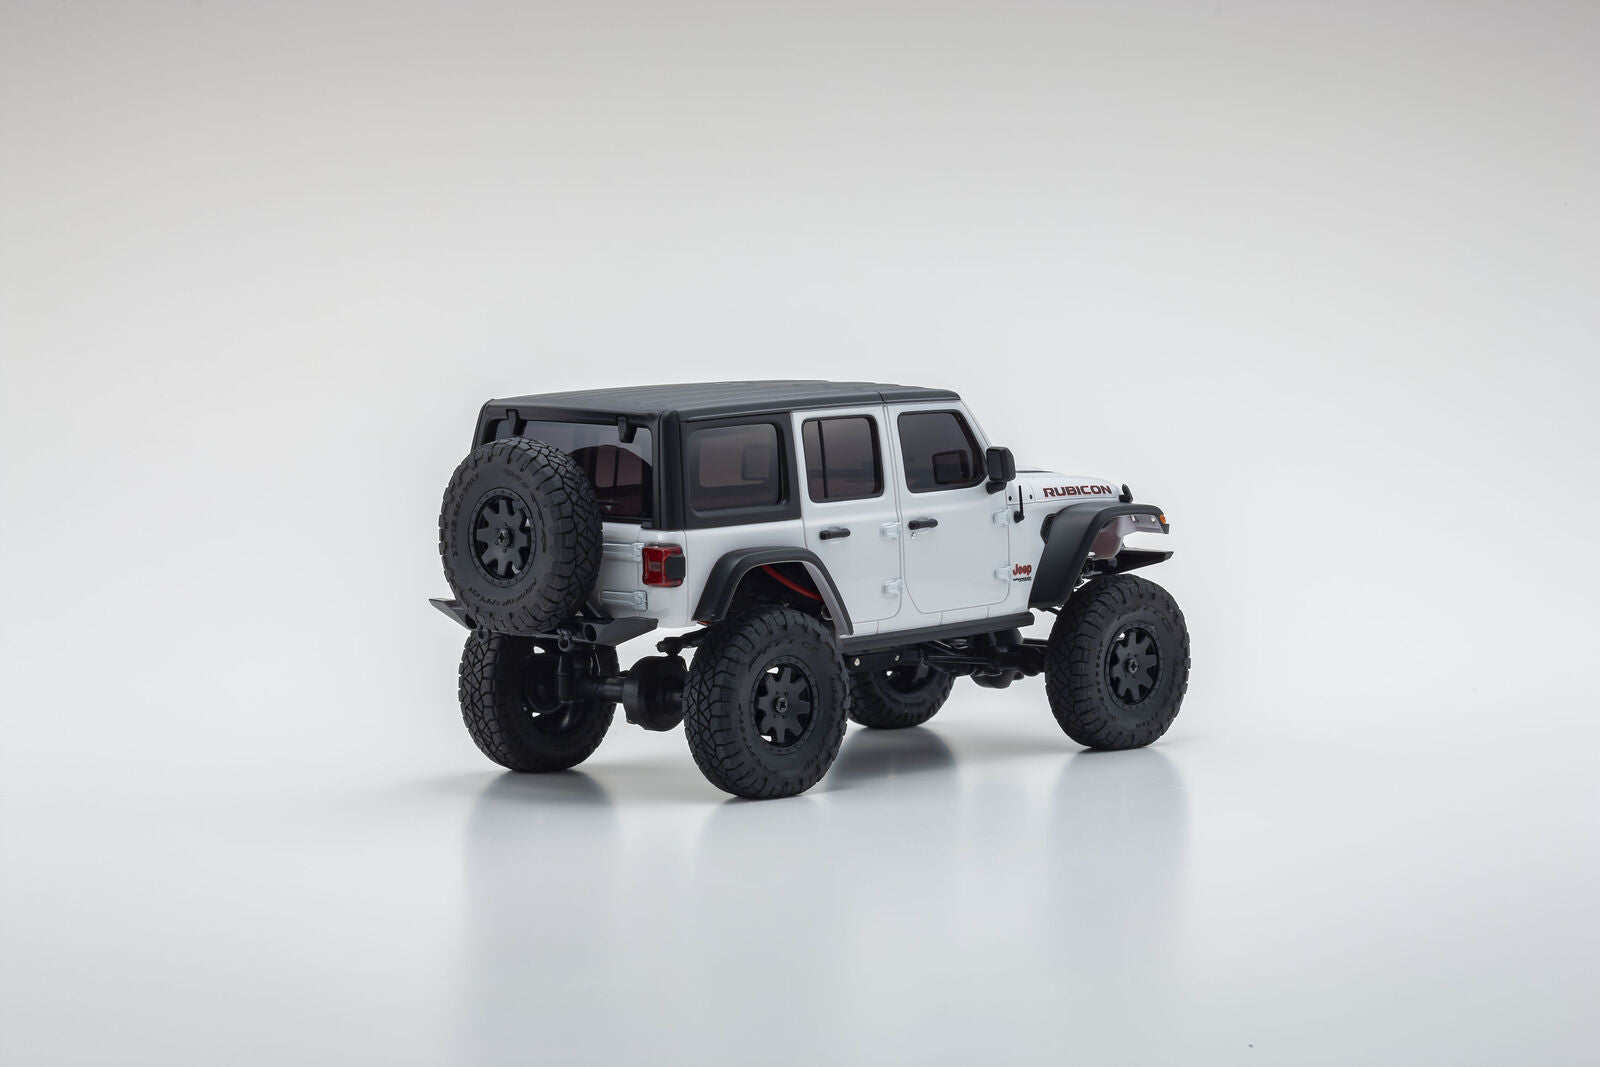 Mini-Z 4x4 Jeep Wrangler Unlimited Rubicon, Bright White, Readyset